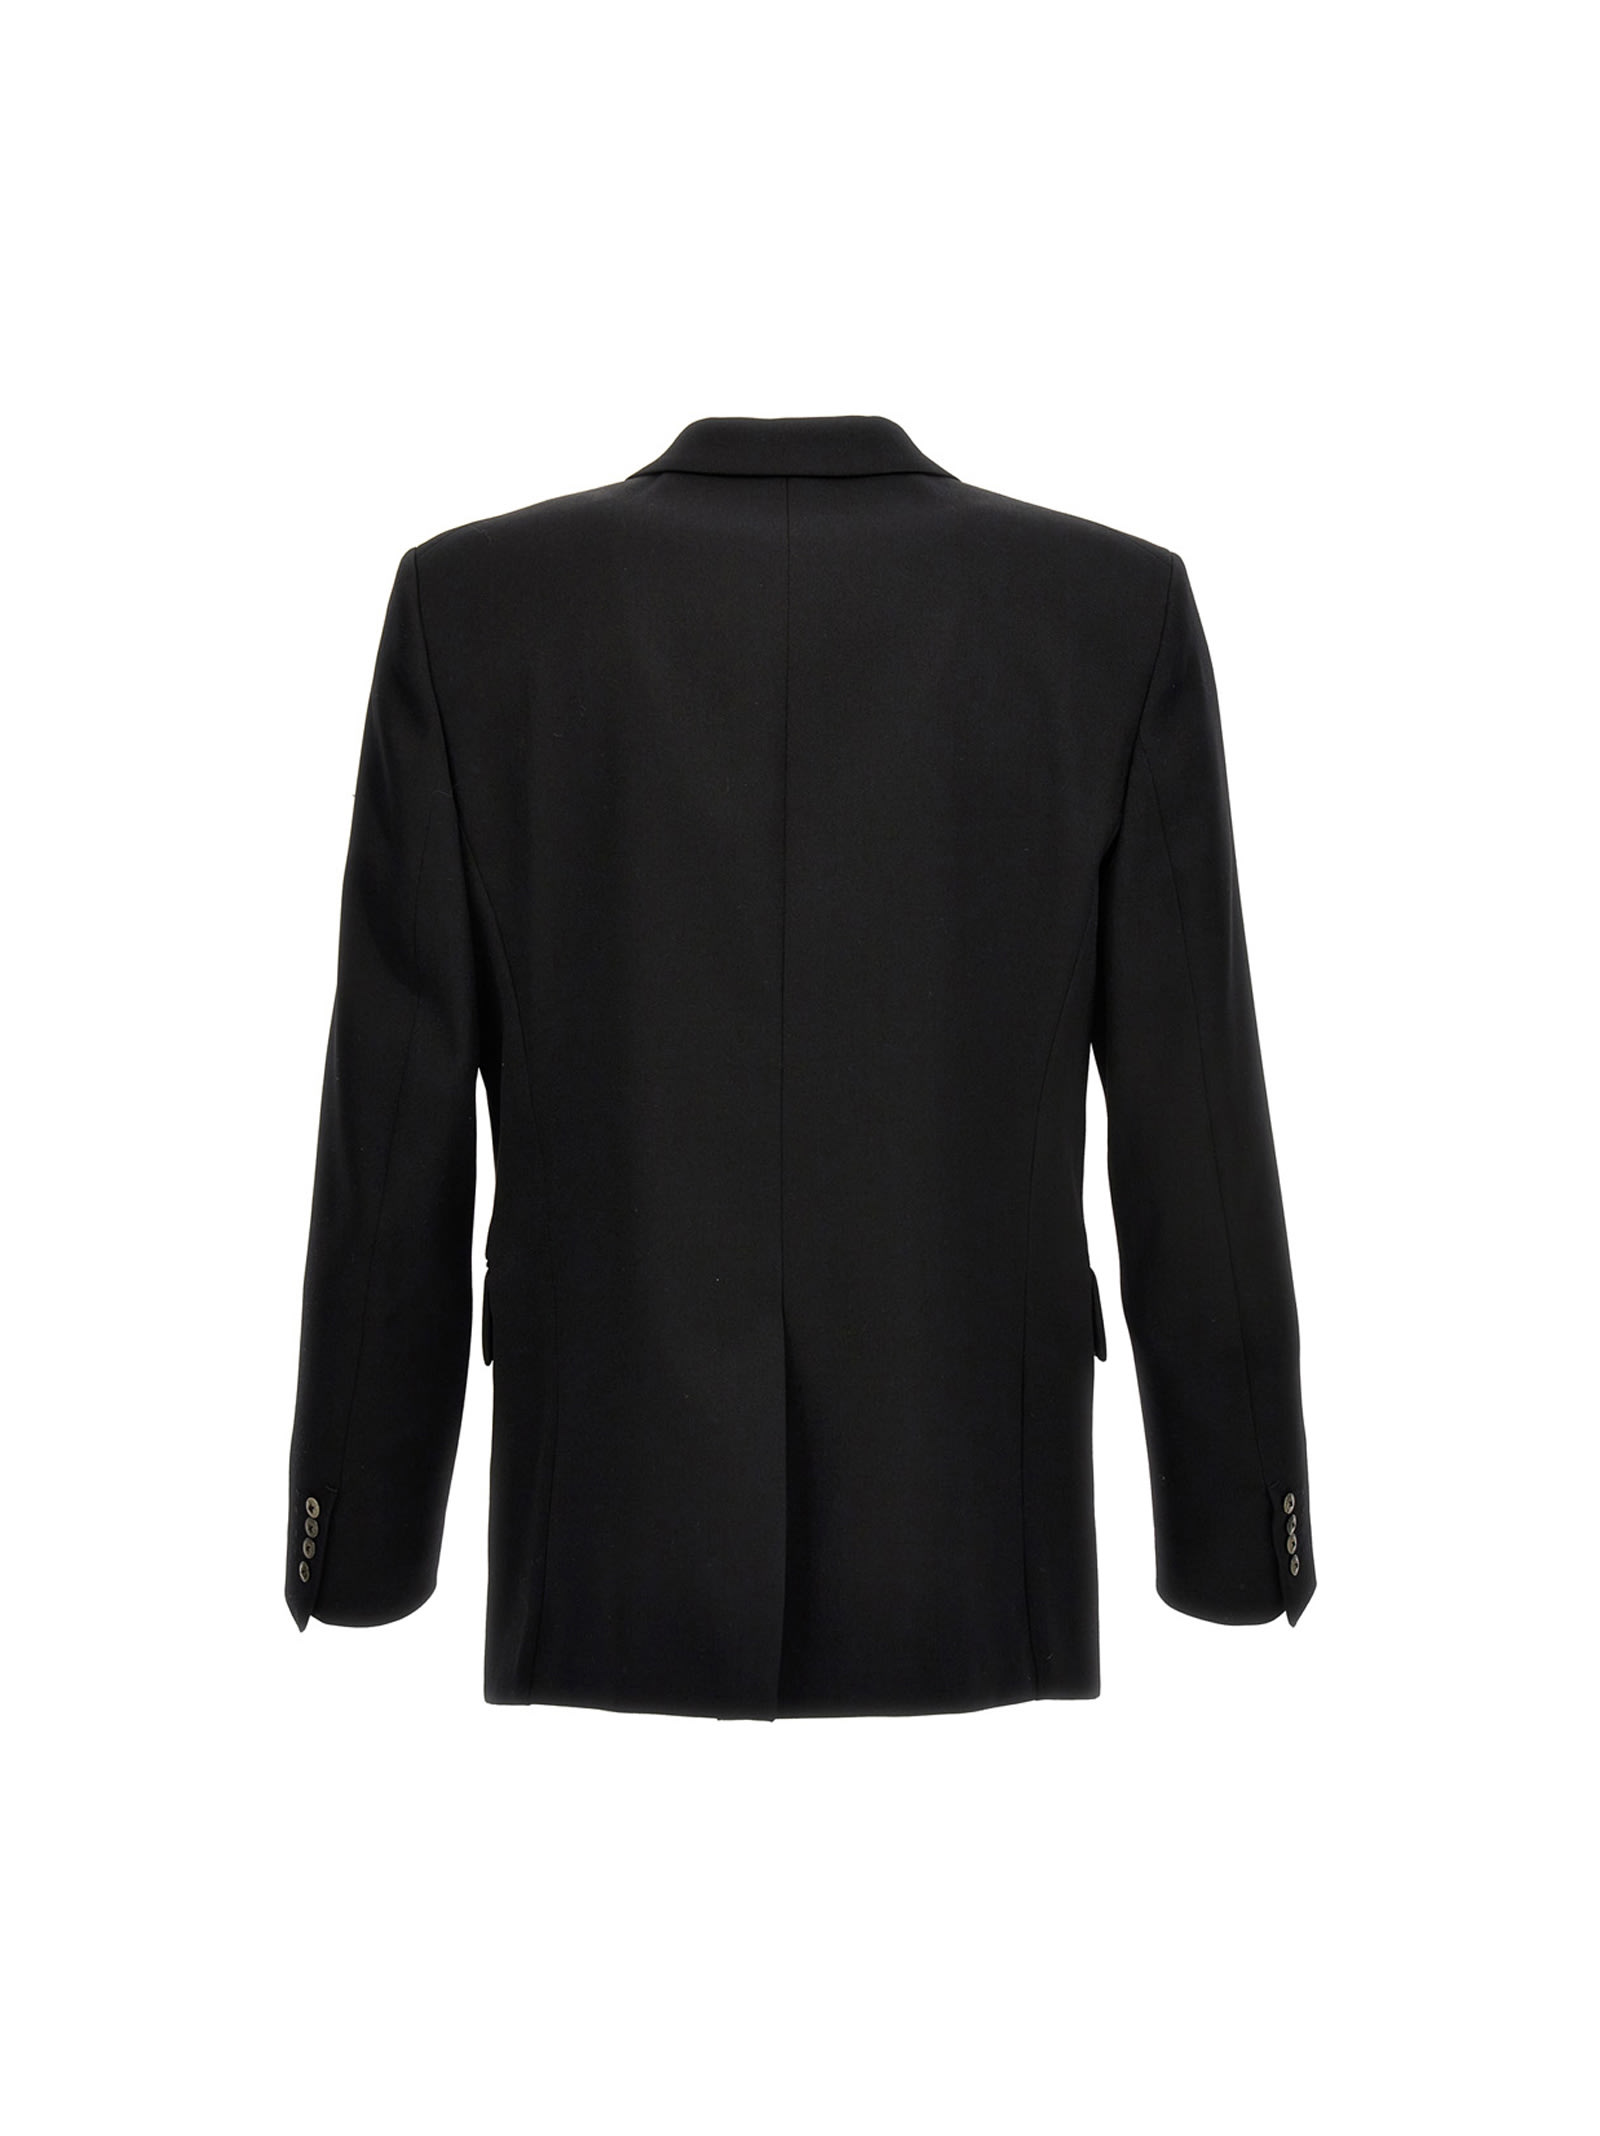 Shop Lanvin Wool Single Breast Blazer Jacket In Black